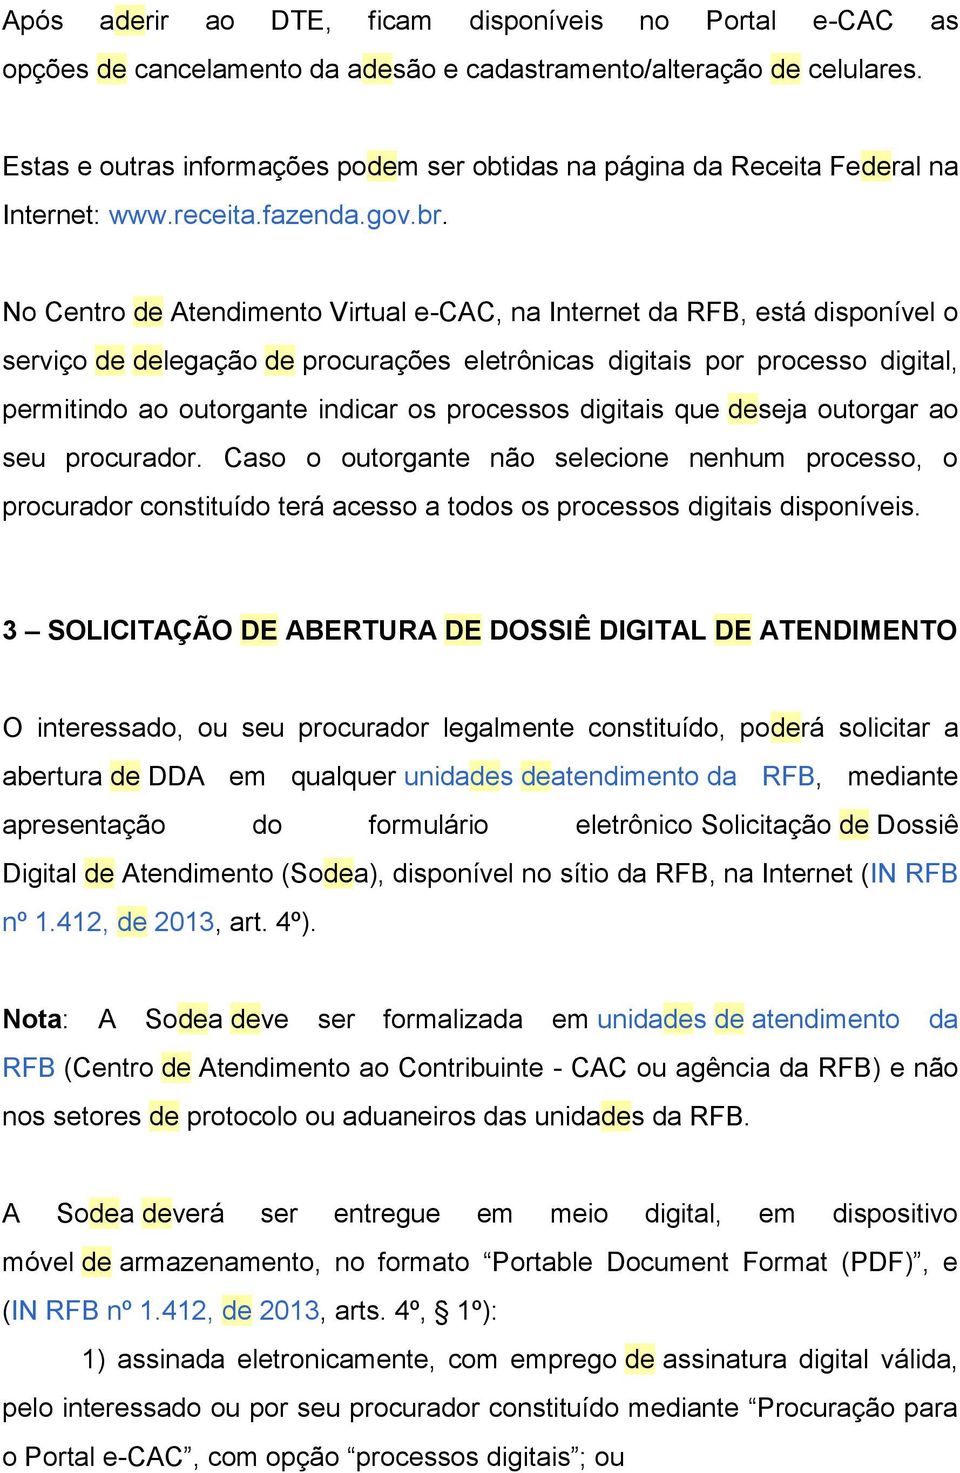 No Centro de Atendimento Virtual e-cac, na Internet da RFB, está disponível o serviço de delegação de procurações eletrônicas digitais por processo digital, permitindo ao outorgante indicar os